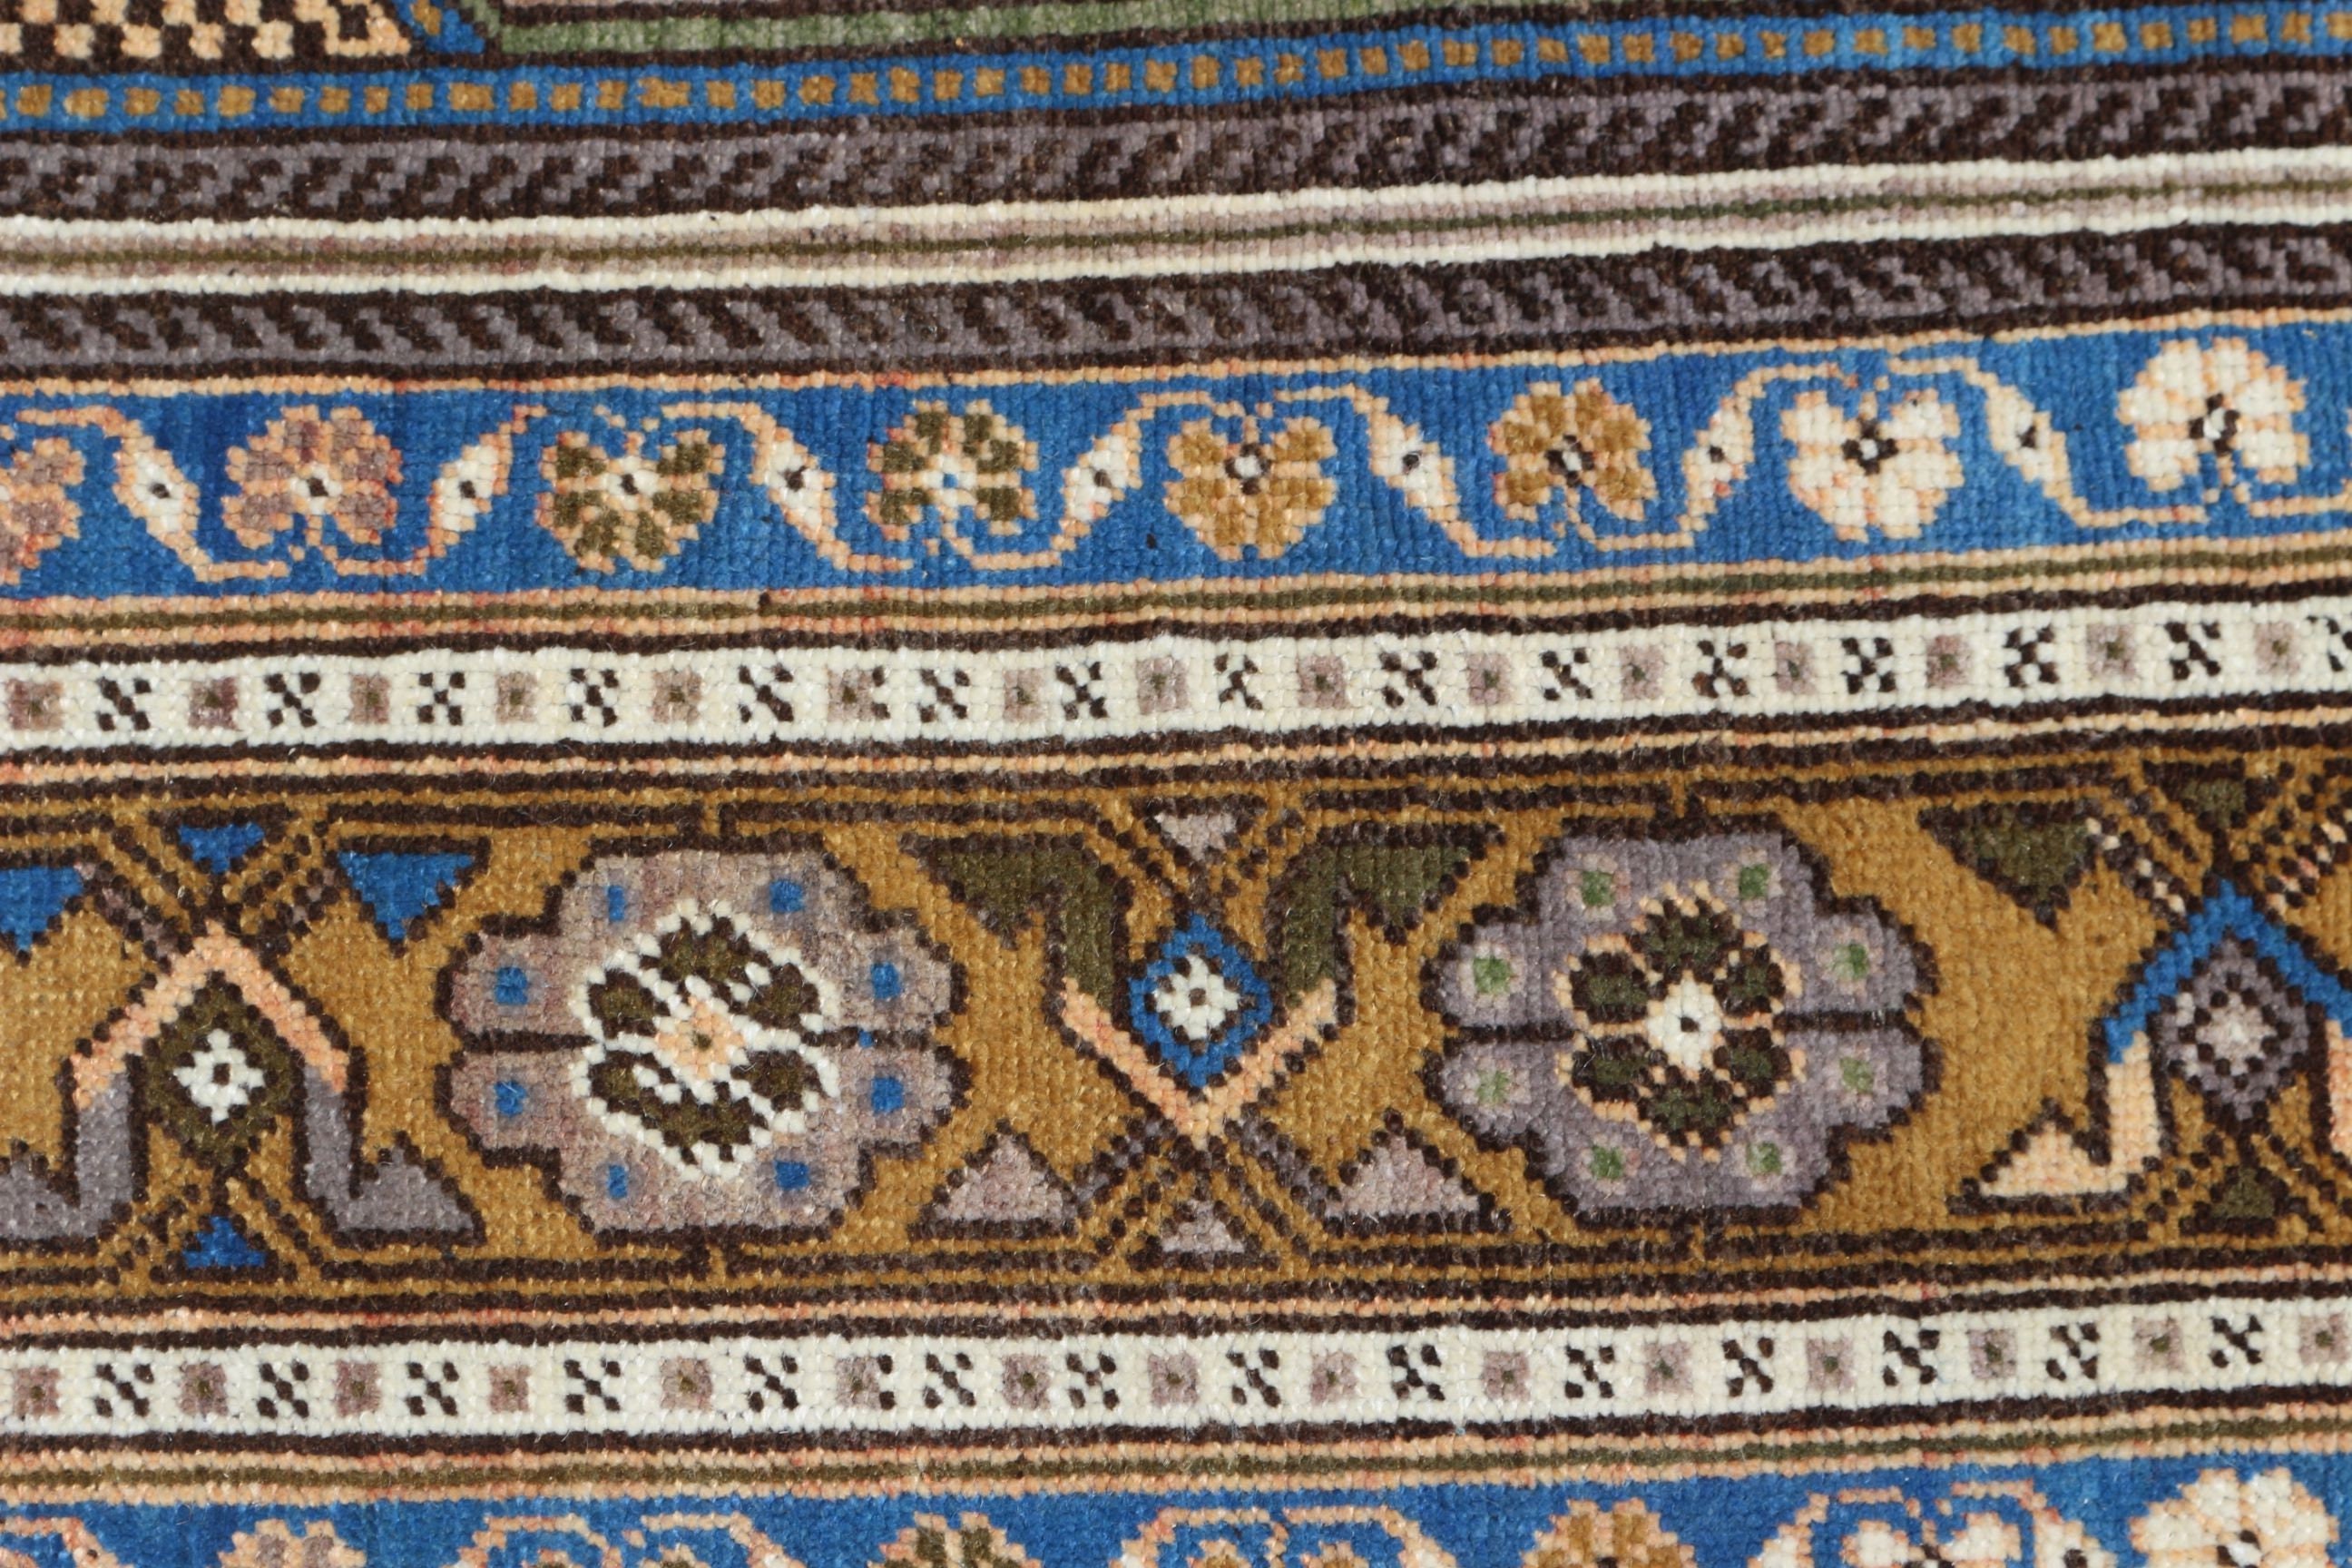 Bedroom Rugs, Turkish Rug, Living Room Rug, Blue  4.8x10.1 ft Large Rugs, Antique Rugs, Moroccan Rug, Custom Rug, Vintage Rug